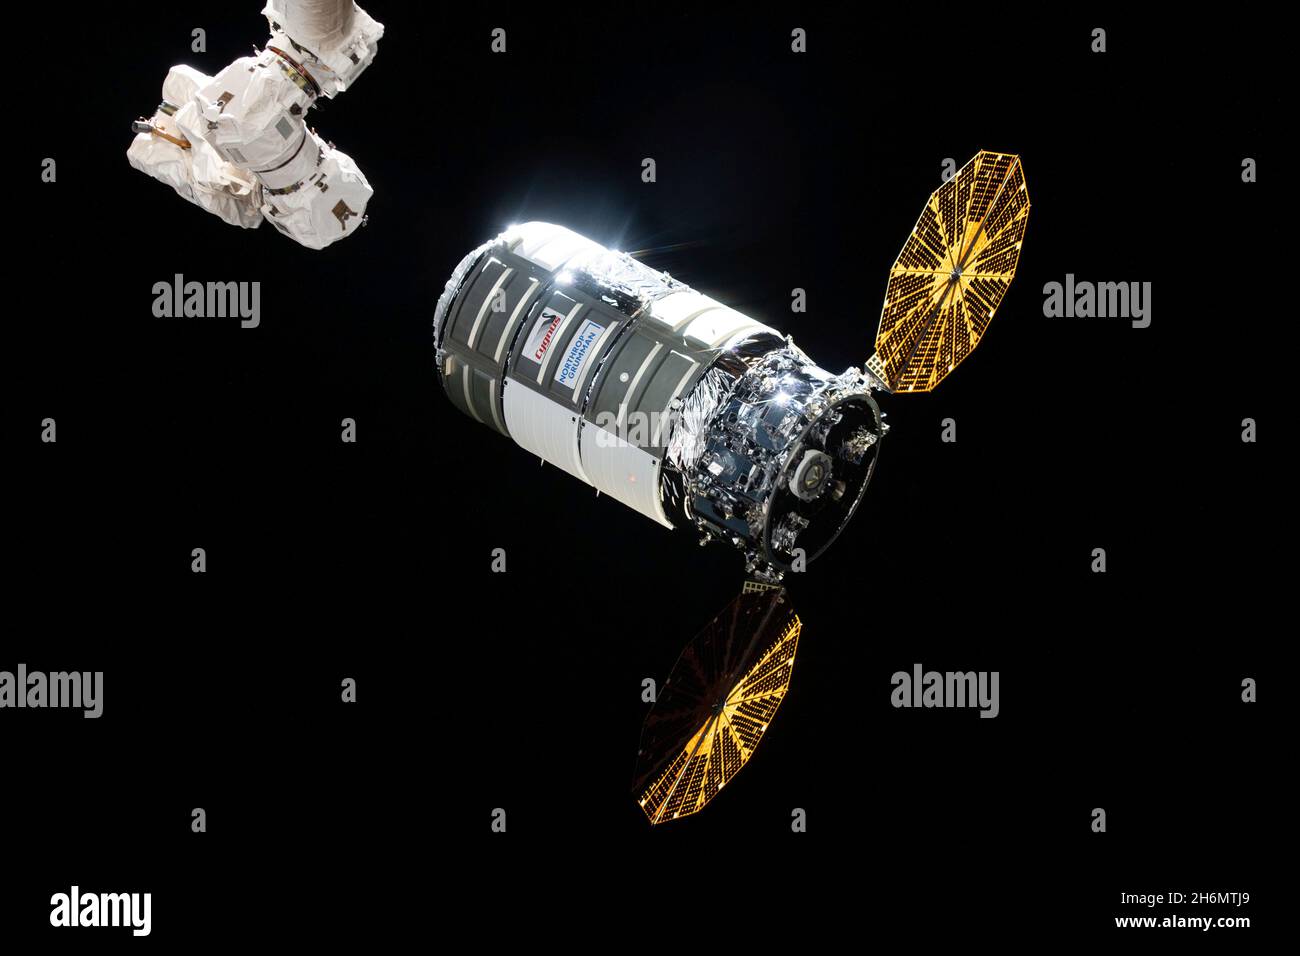 Cygnus kommt am 12. August 2021 auf der Internationalen Raumstation (ISS) an, nachdem er zwei Tage zuvor mit einer Northrop Grumman Antares-Rakete von der NASAs Wallops Flight Facility auf Wallops Island, Virginia, gestartet wurde. Es ist die 16. Kommerzielle Nachversorgungsmission der NASA zur Raumstation companys. Northrop Grumman benannte das Raumschiff nach der NASA-Astronautin Ellison Onizuka, der ersten asiatischen amerikanischen Astronautin. Cygnus wird am Mittwoch, den 15. Dezember 2021, nach einem Abschuss des Motors aus dem Orbit deorbit, um einen zerstörerischen Wiedereinstieg zu schaffen, in dem das Raumschiff, gefüllt mit Abfall, die Raumstation wieder aufsteigen lässt Stockfoto